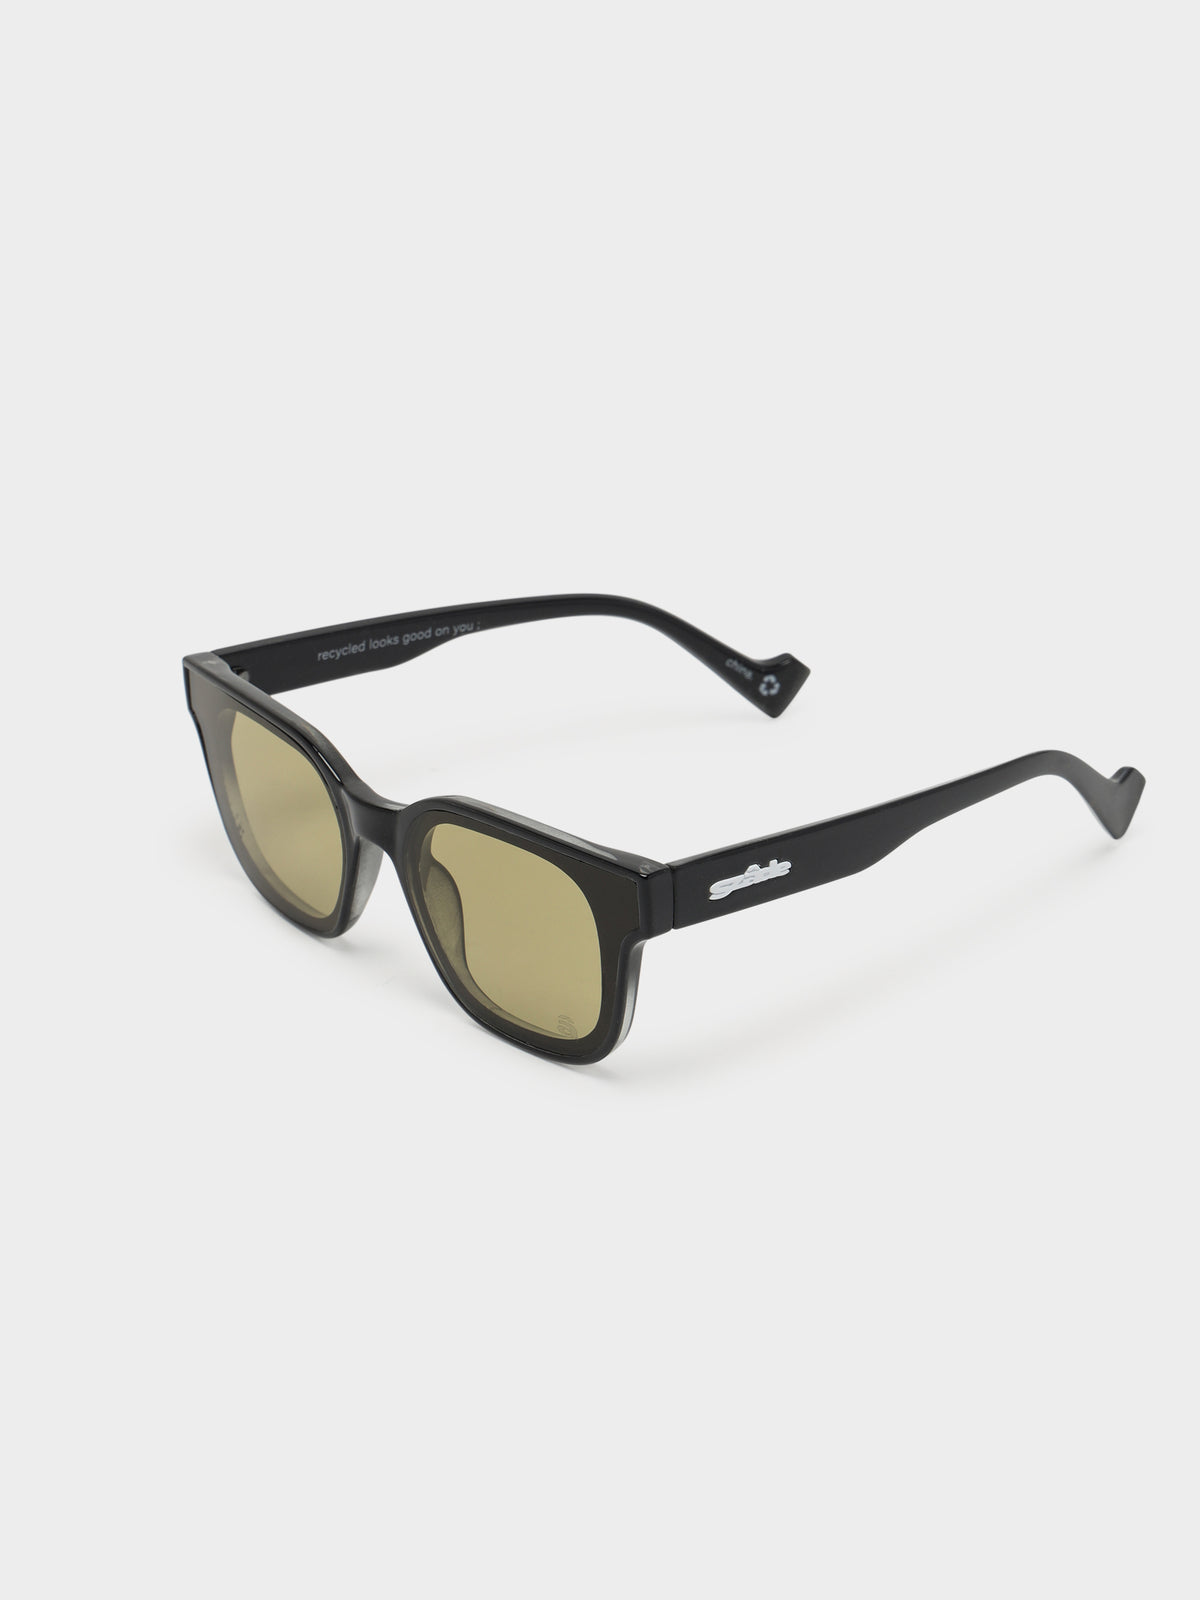 Ellis Sunglasses in Elysium Black